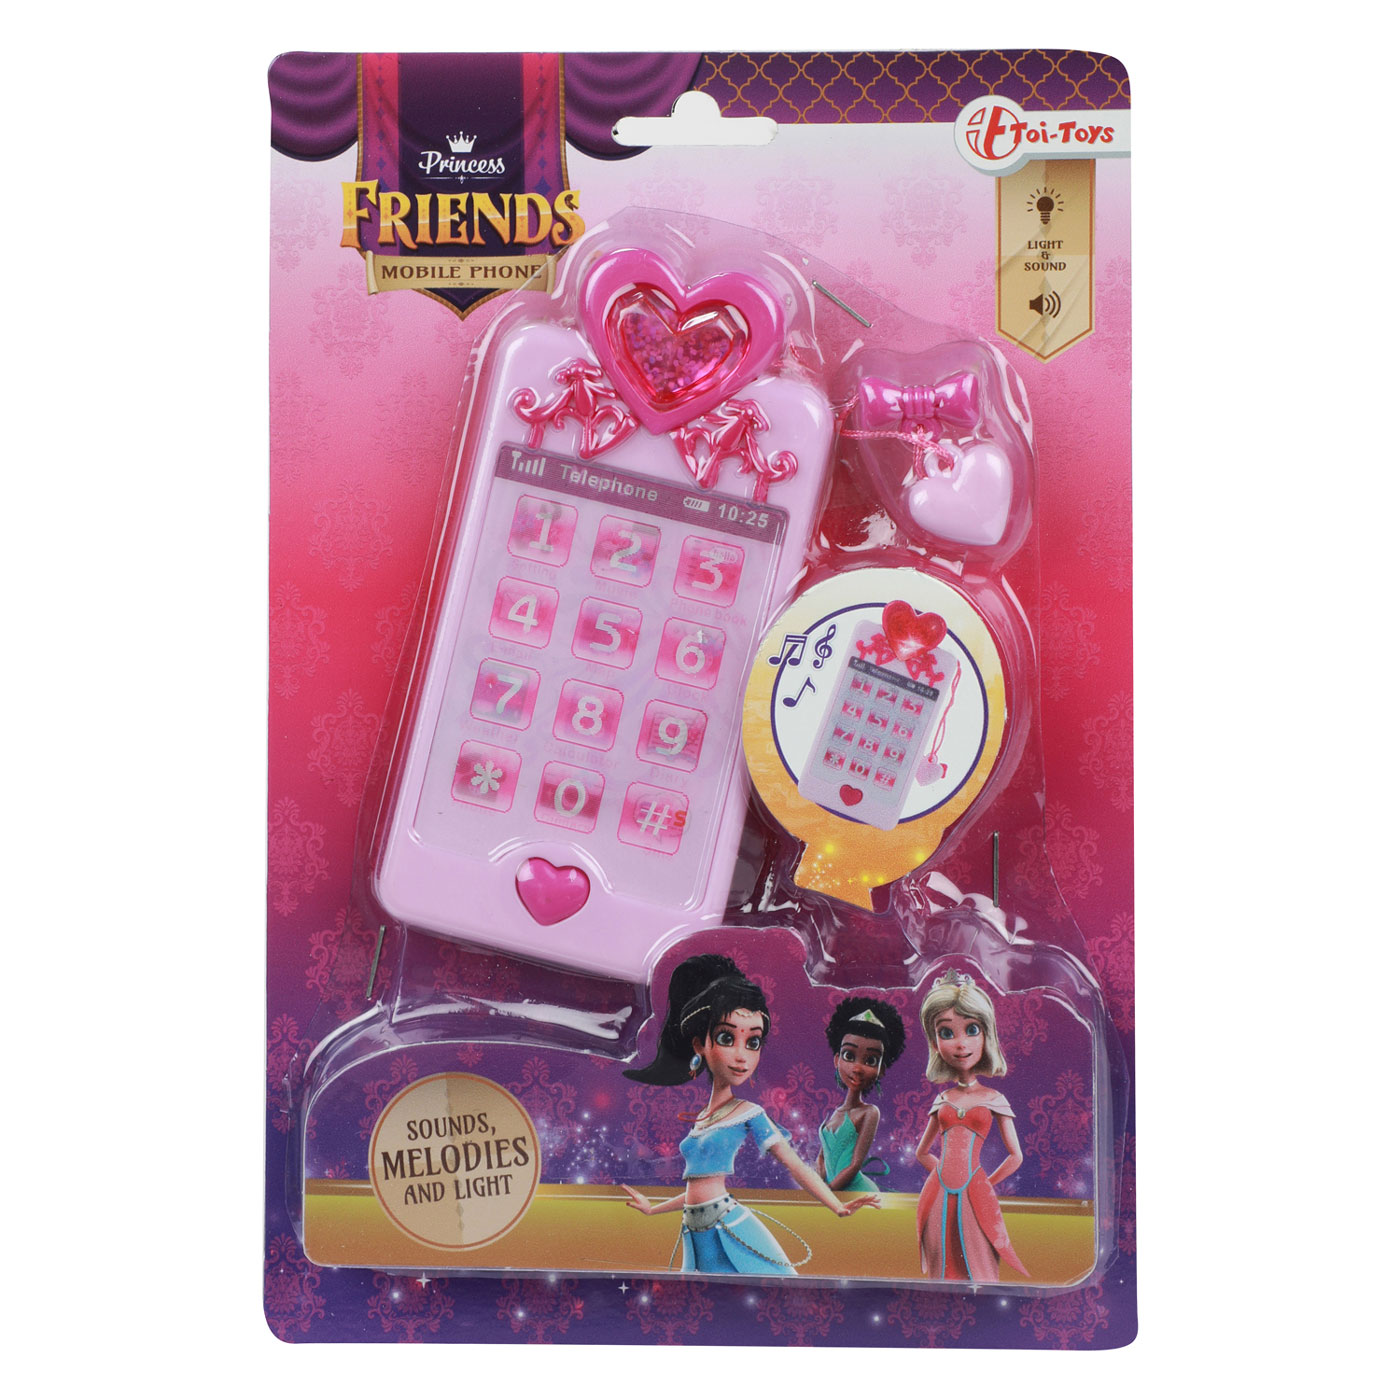 Princess Friends Mobiele Speelgoedtelefoon Roze